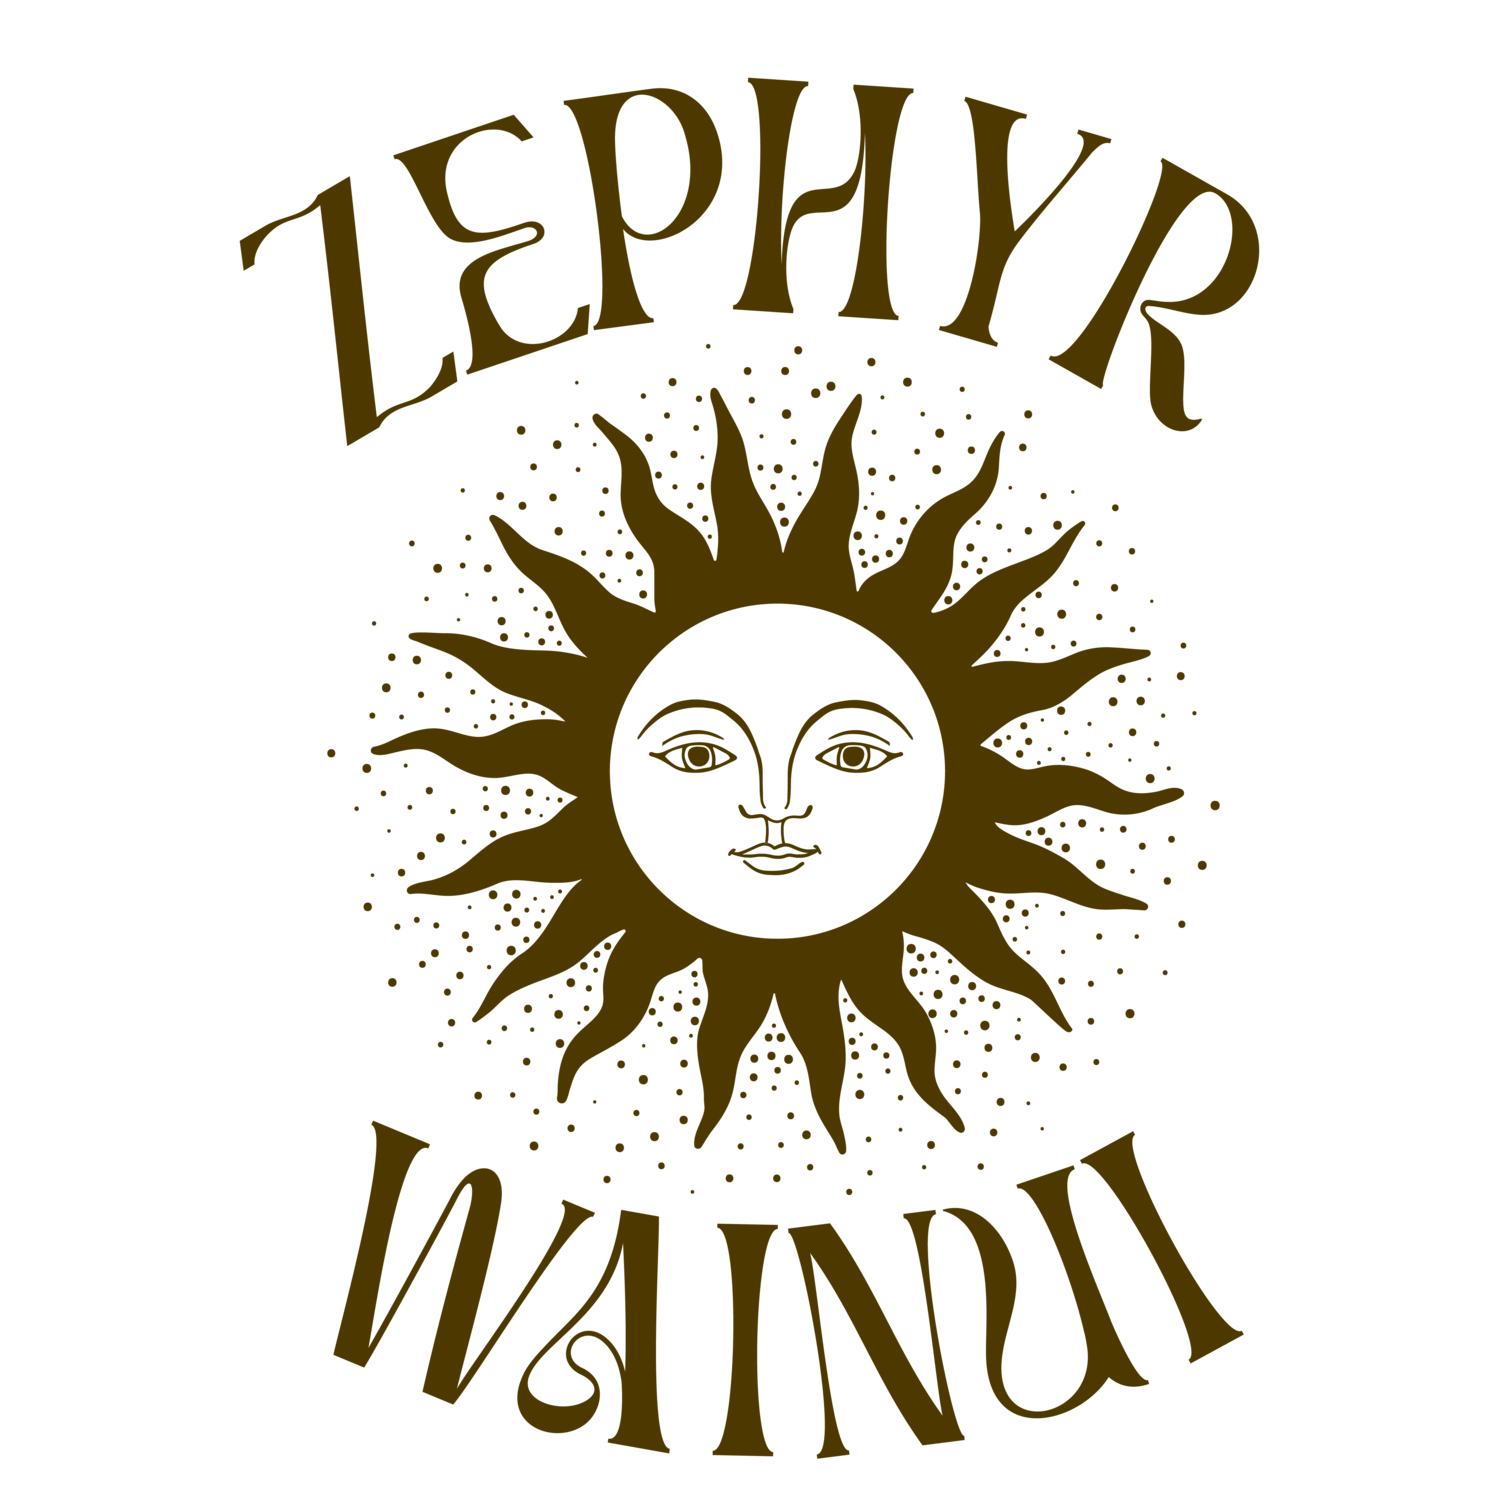 Zephyr Wainui